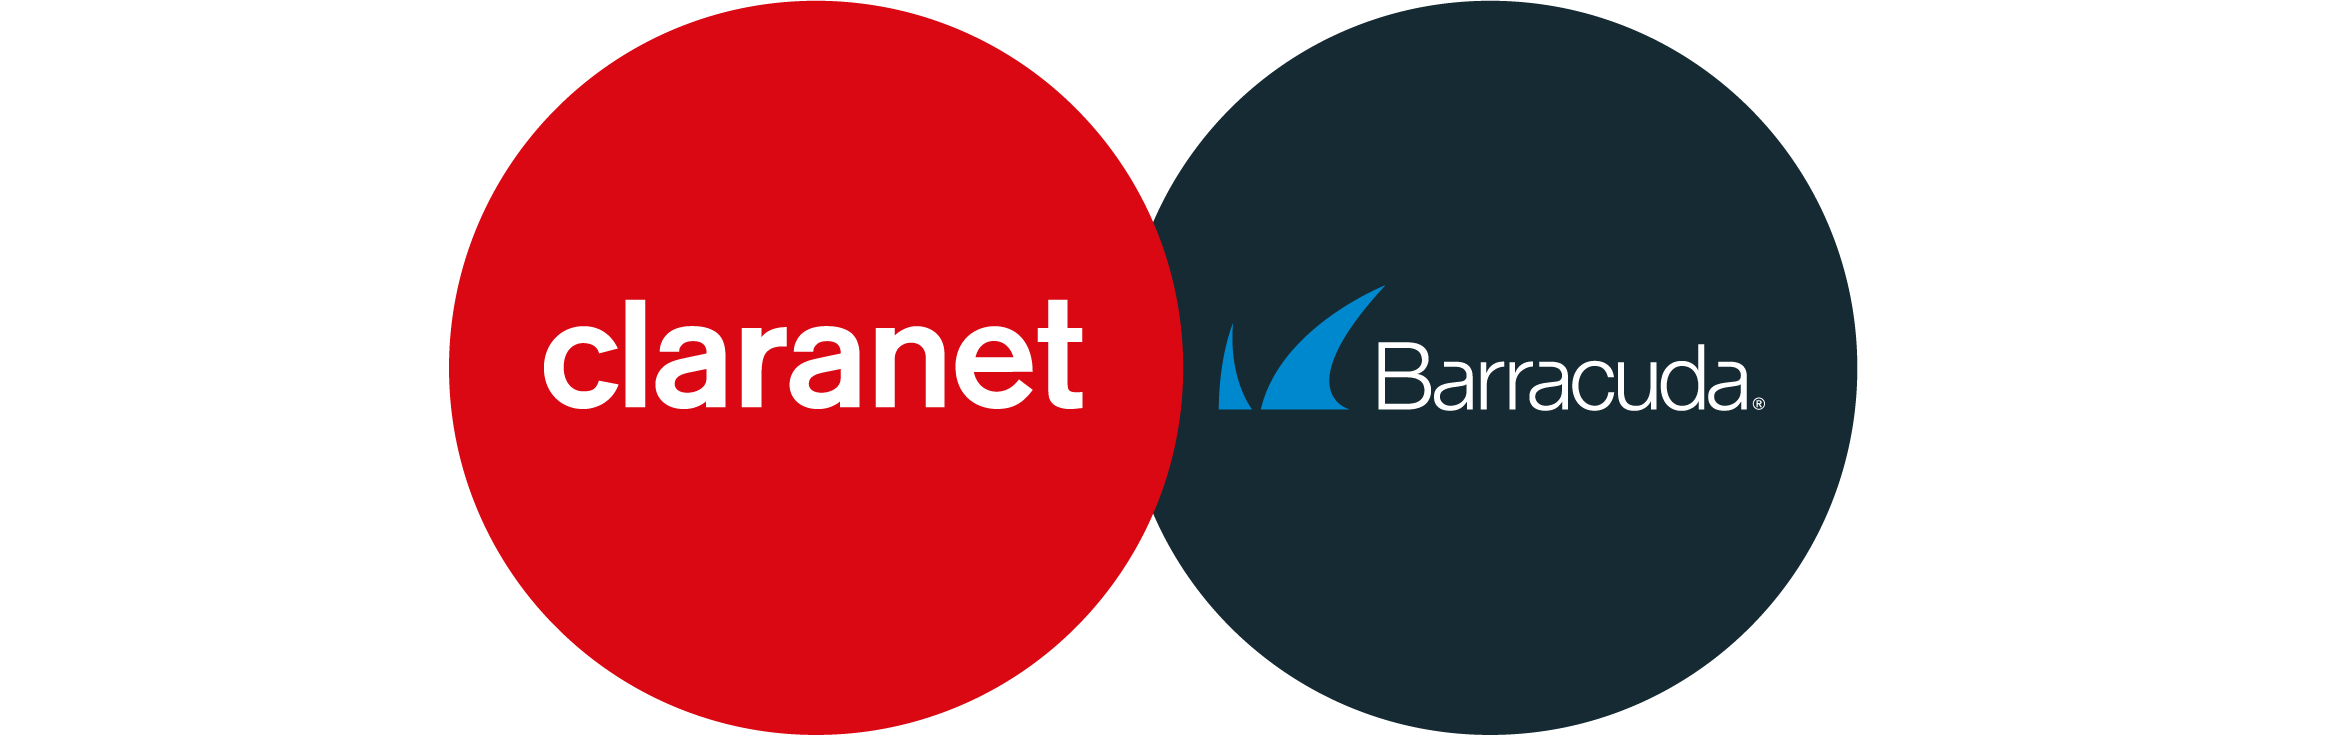 Claranet and Barracuda logos